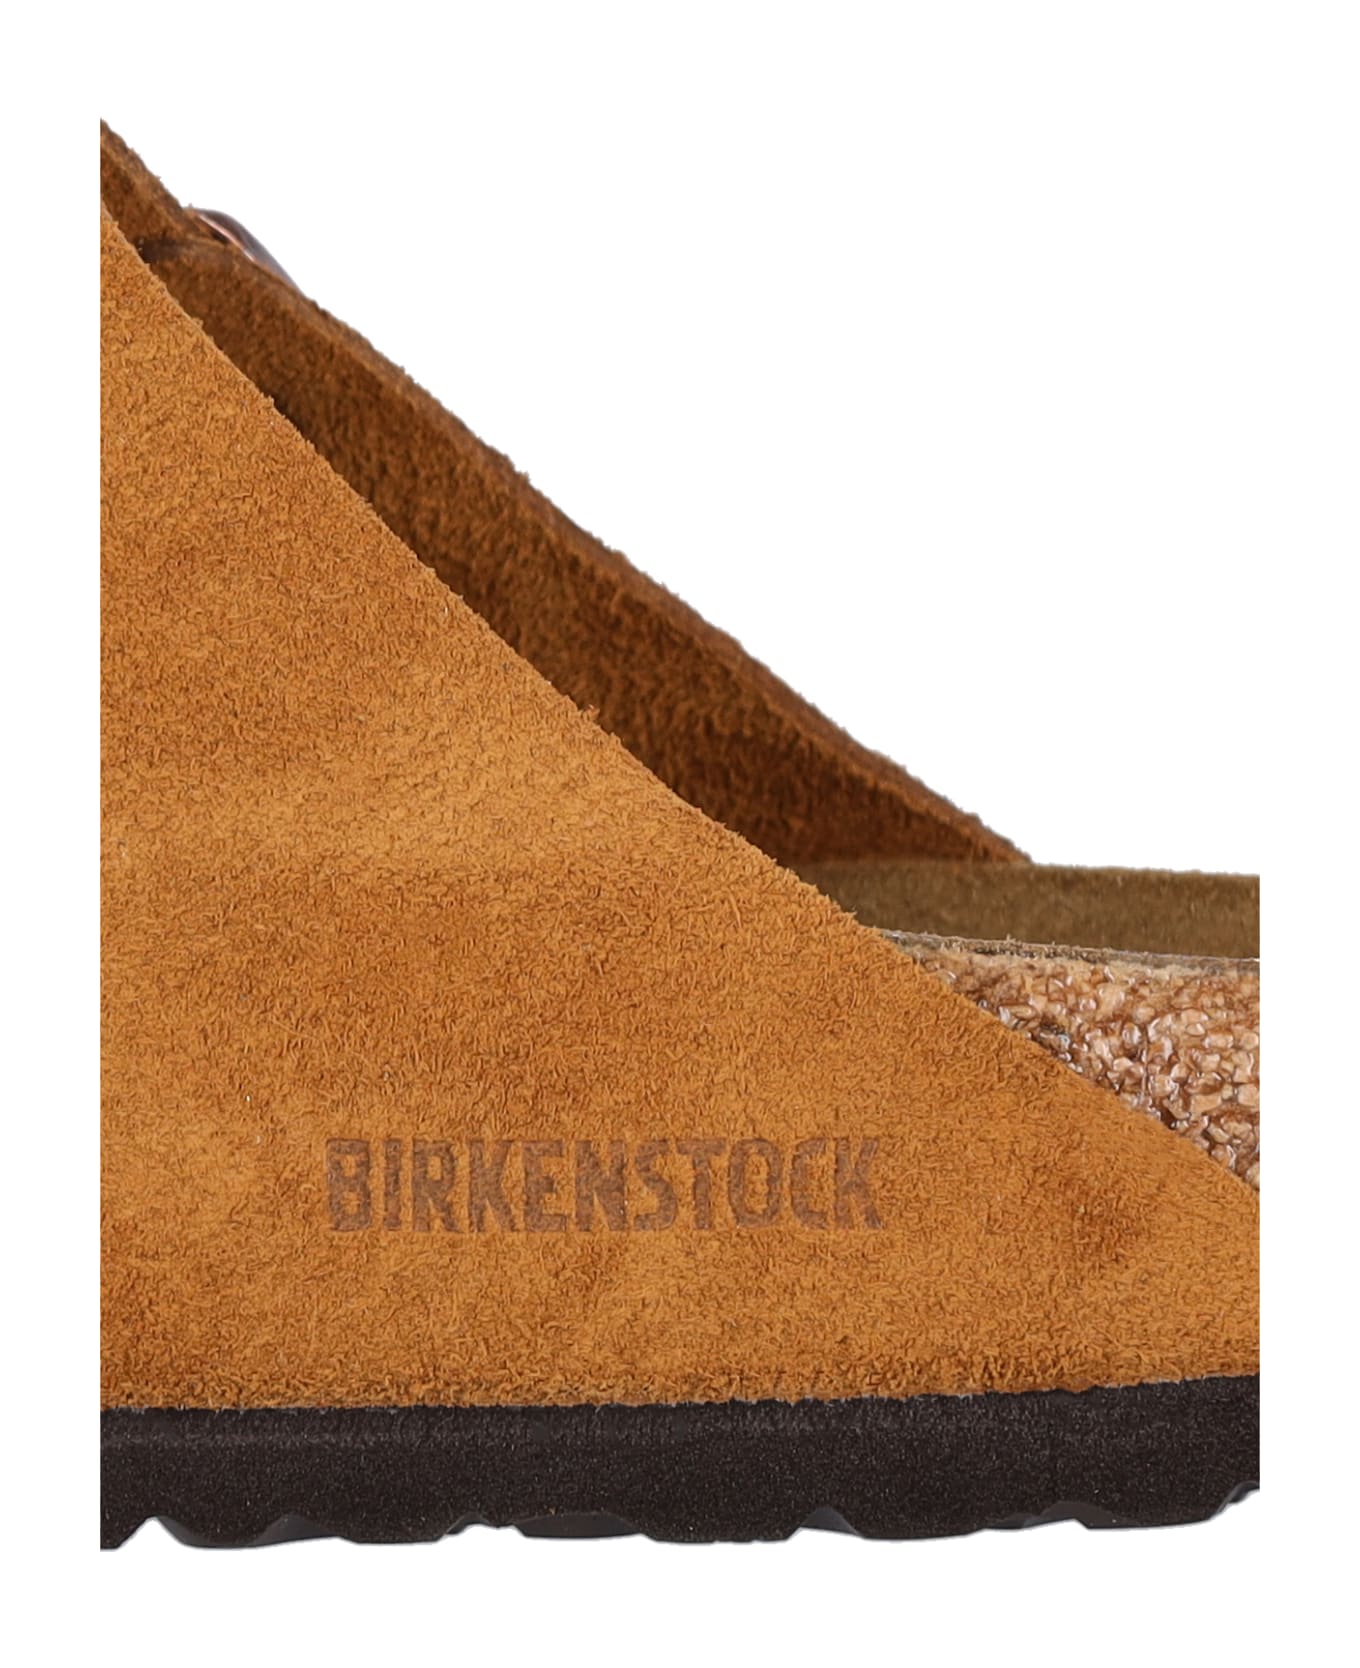 Birkenstock 'arizona' Sandals - MINK フラットシューズ